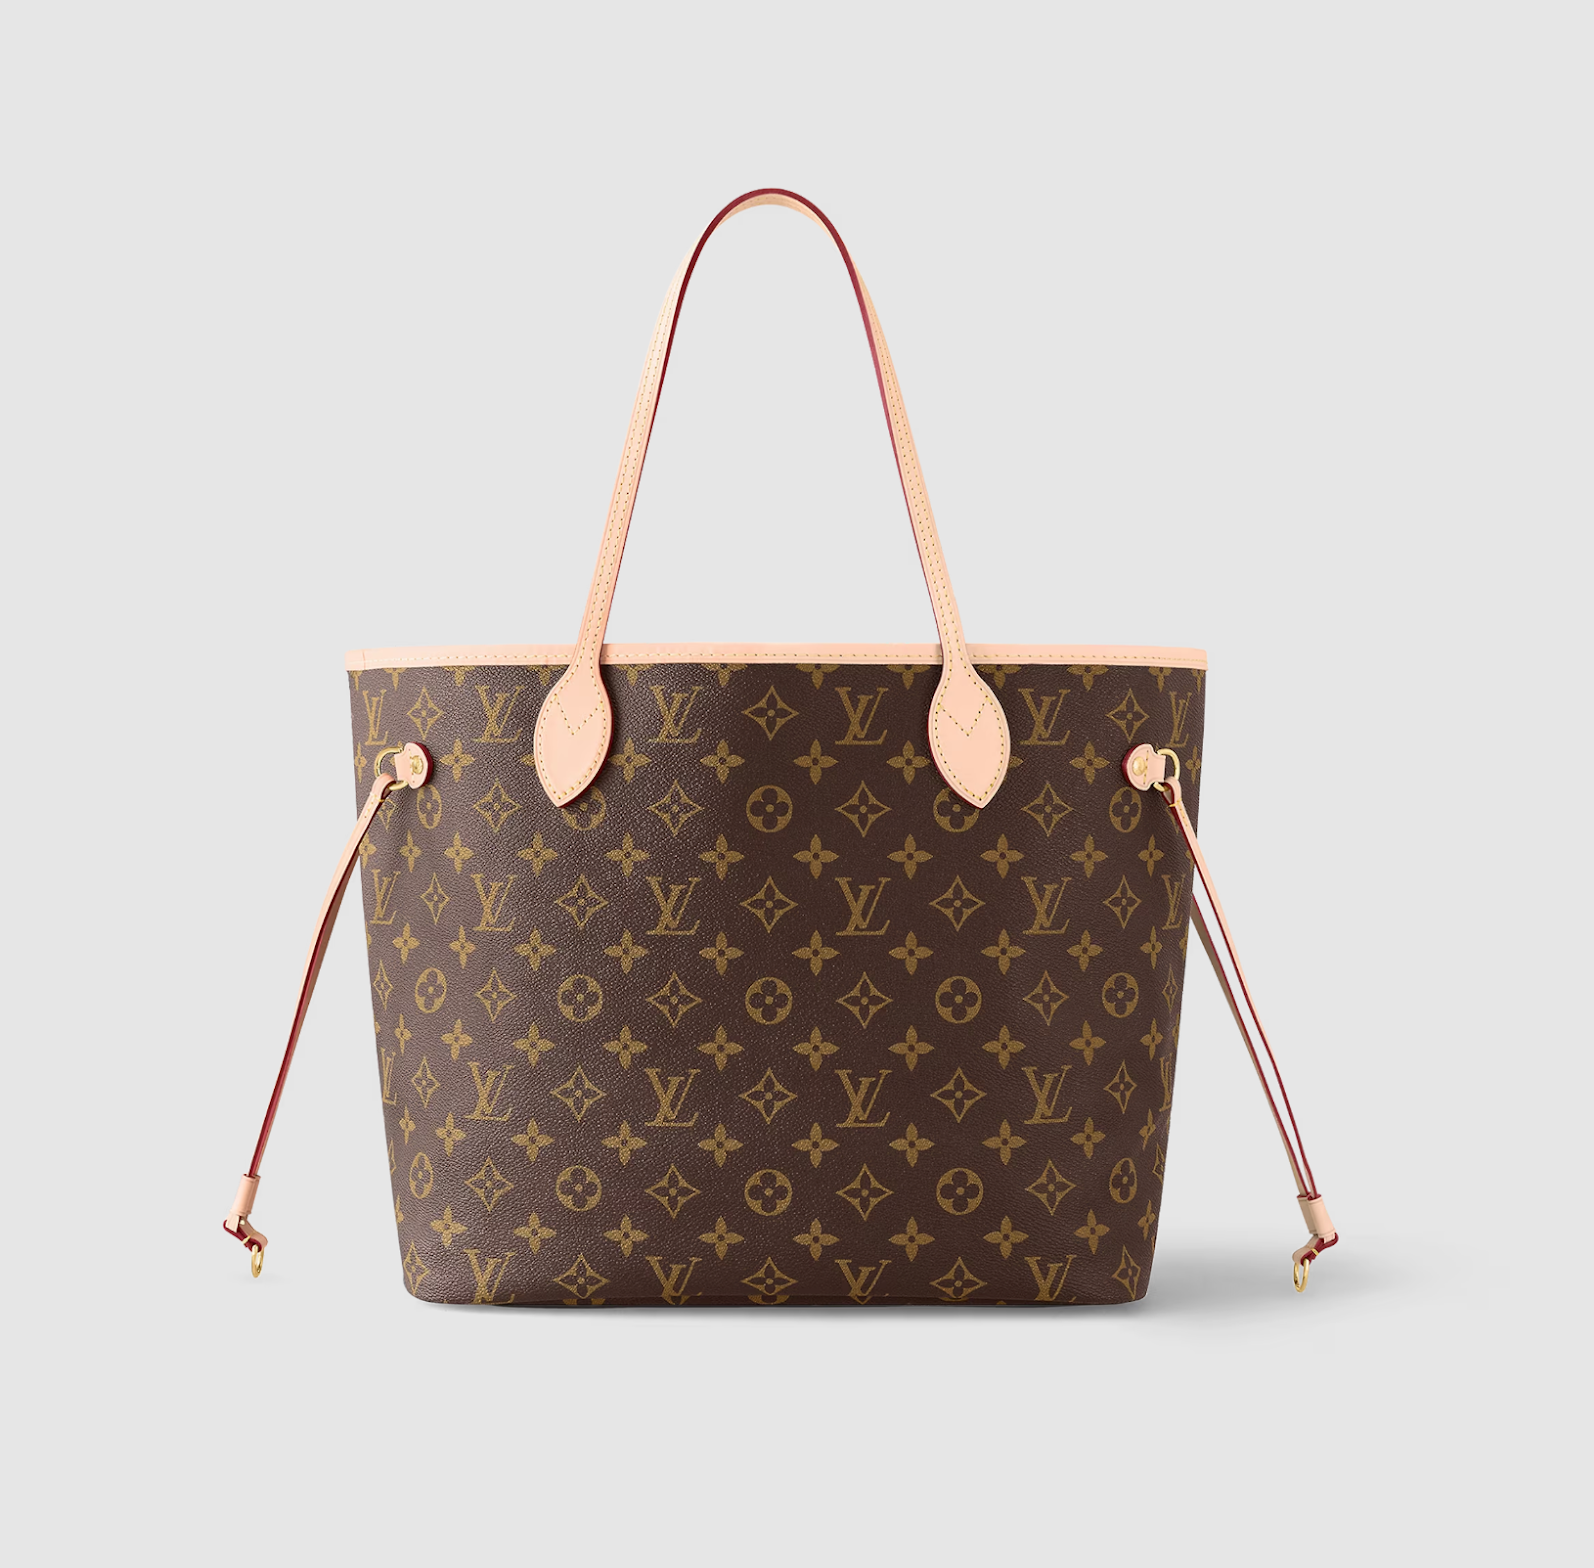 Louis Vuitton leather bag